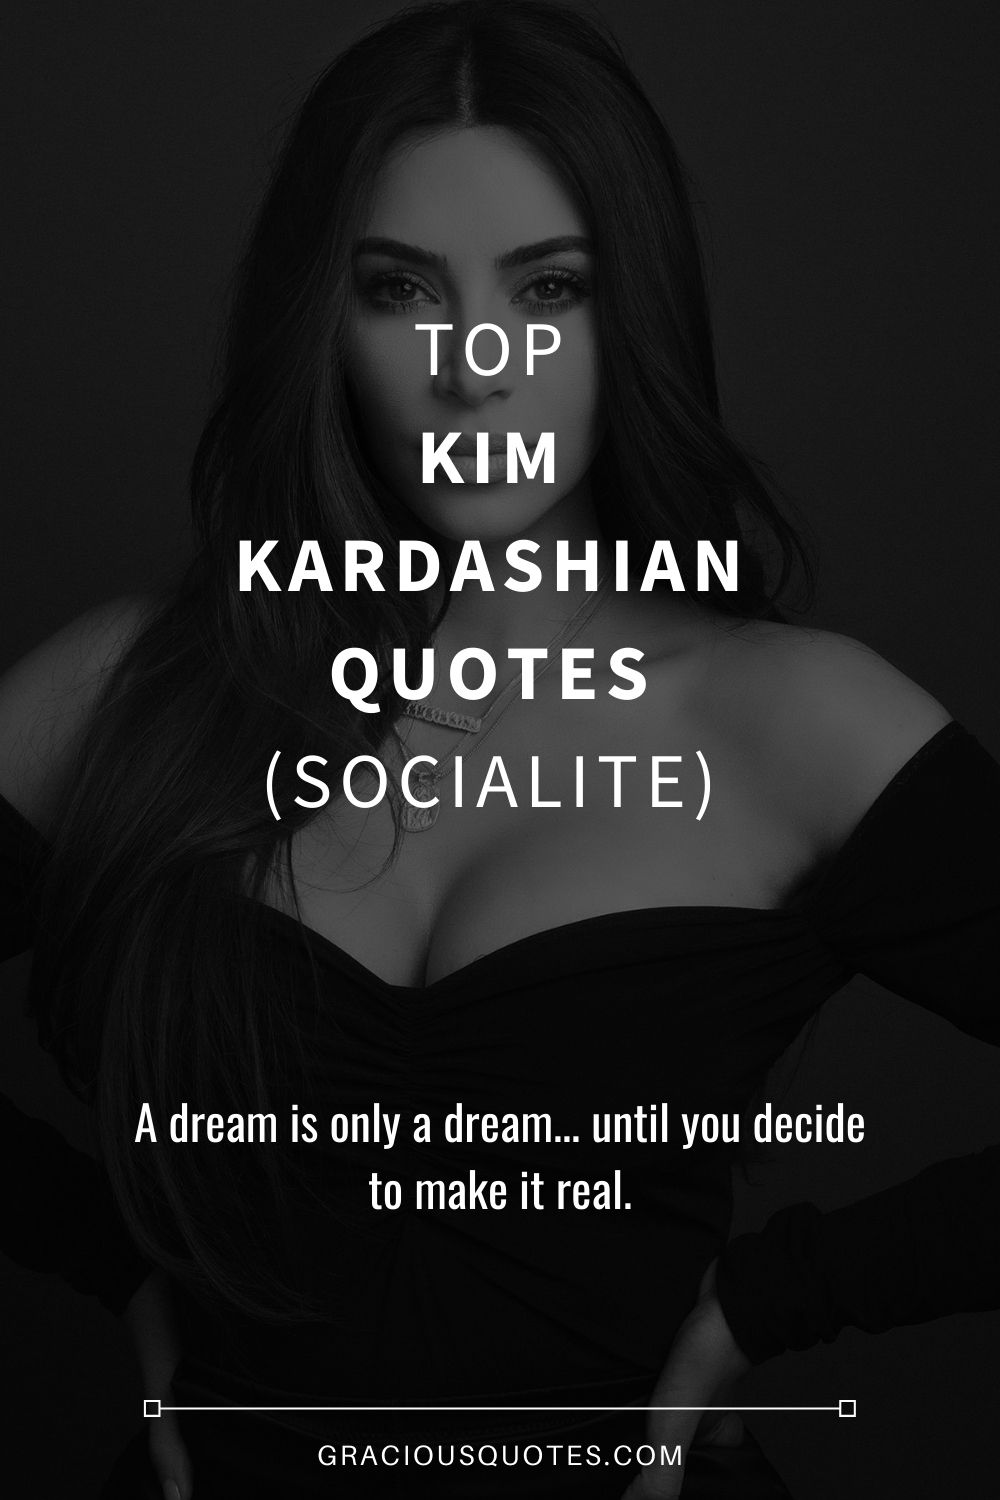 Top Kim Kardashian Quotes (SOCIALITE) - Gracious Quotes